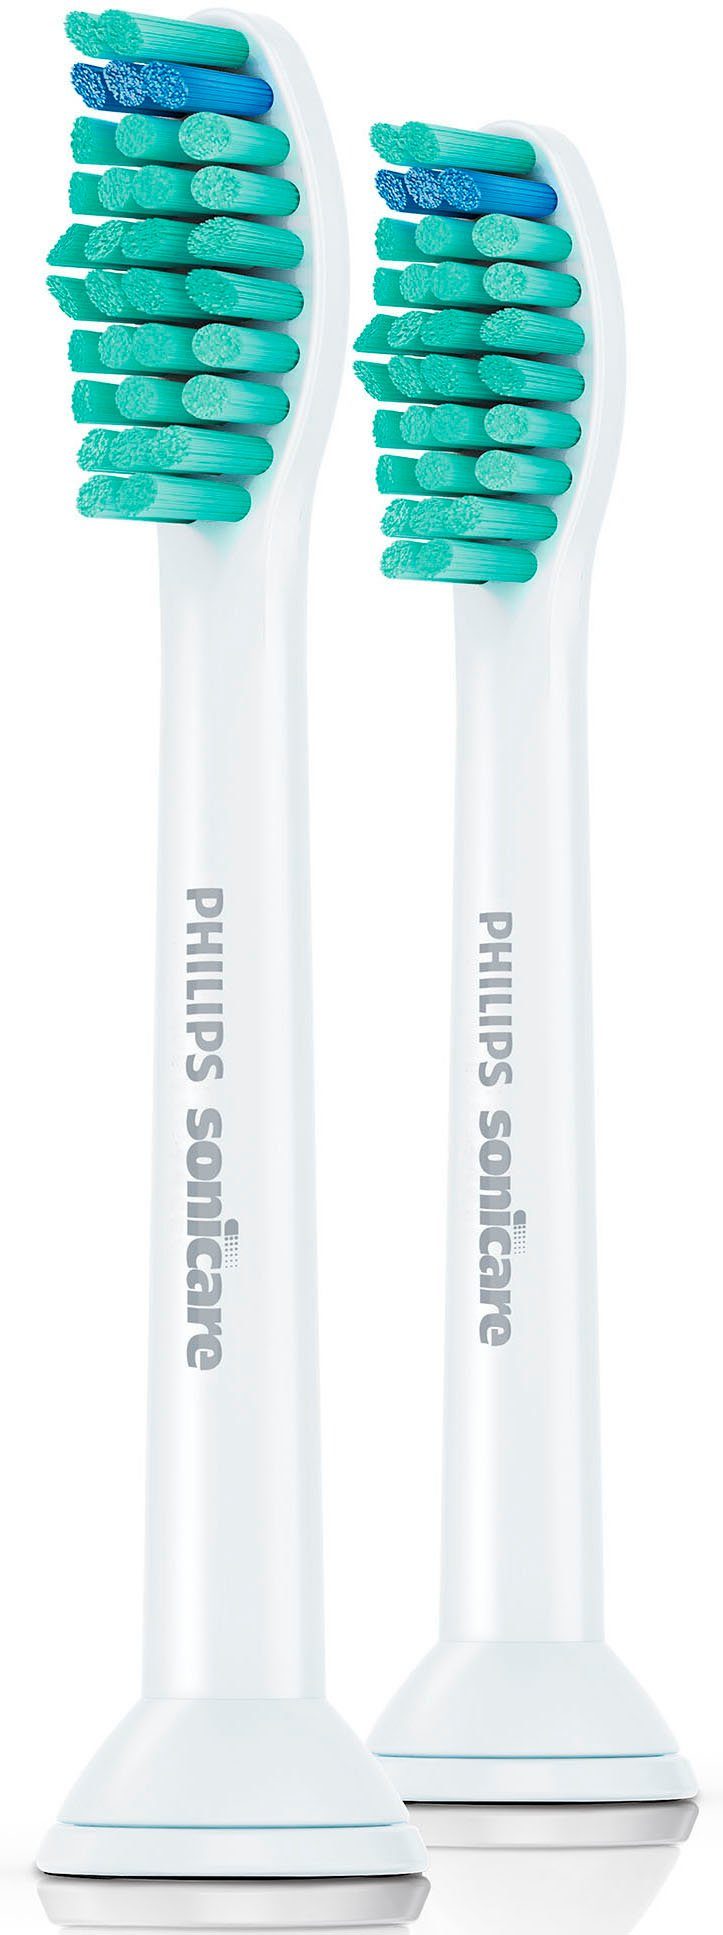 Philips Sonicare opzetborsteltjes ProResults Standard bijzonder groot poetsbereik